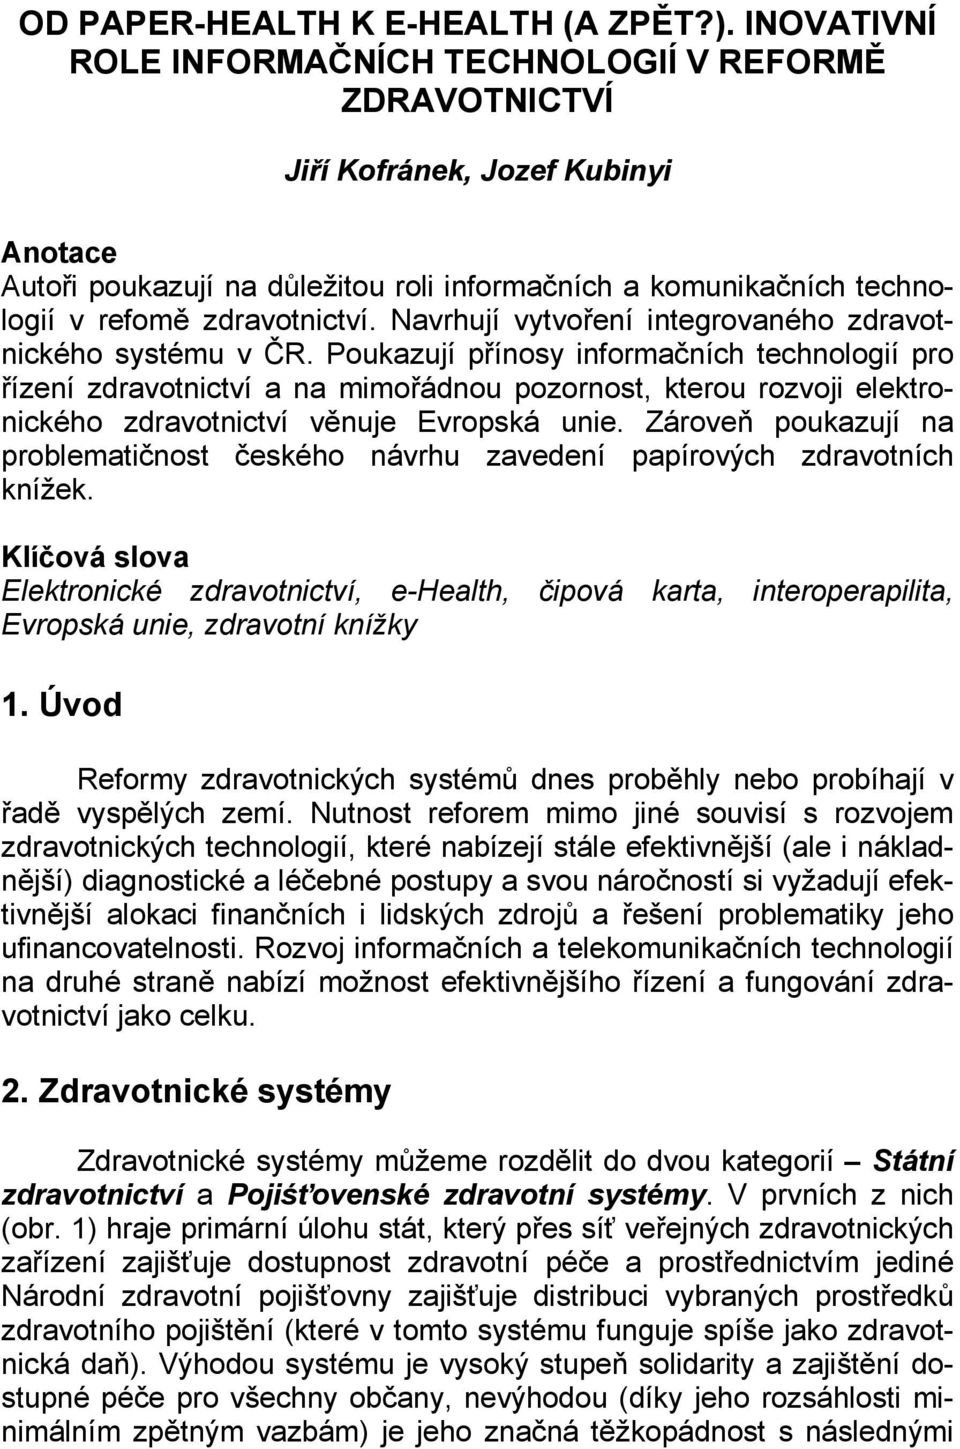 zdravotnictví. Navrhují vytvoření integrovaného zdravotnického systému v ČR.